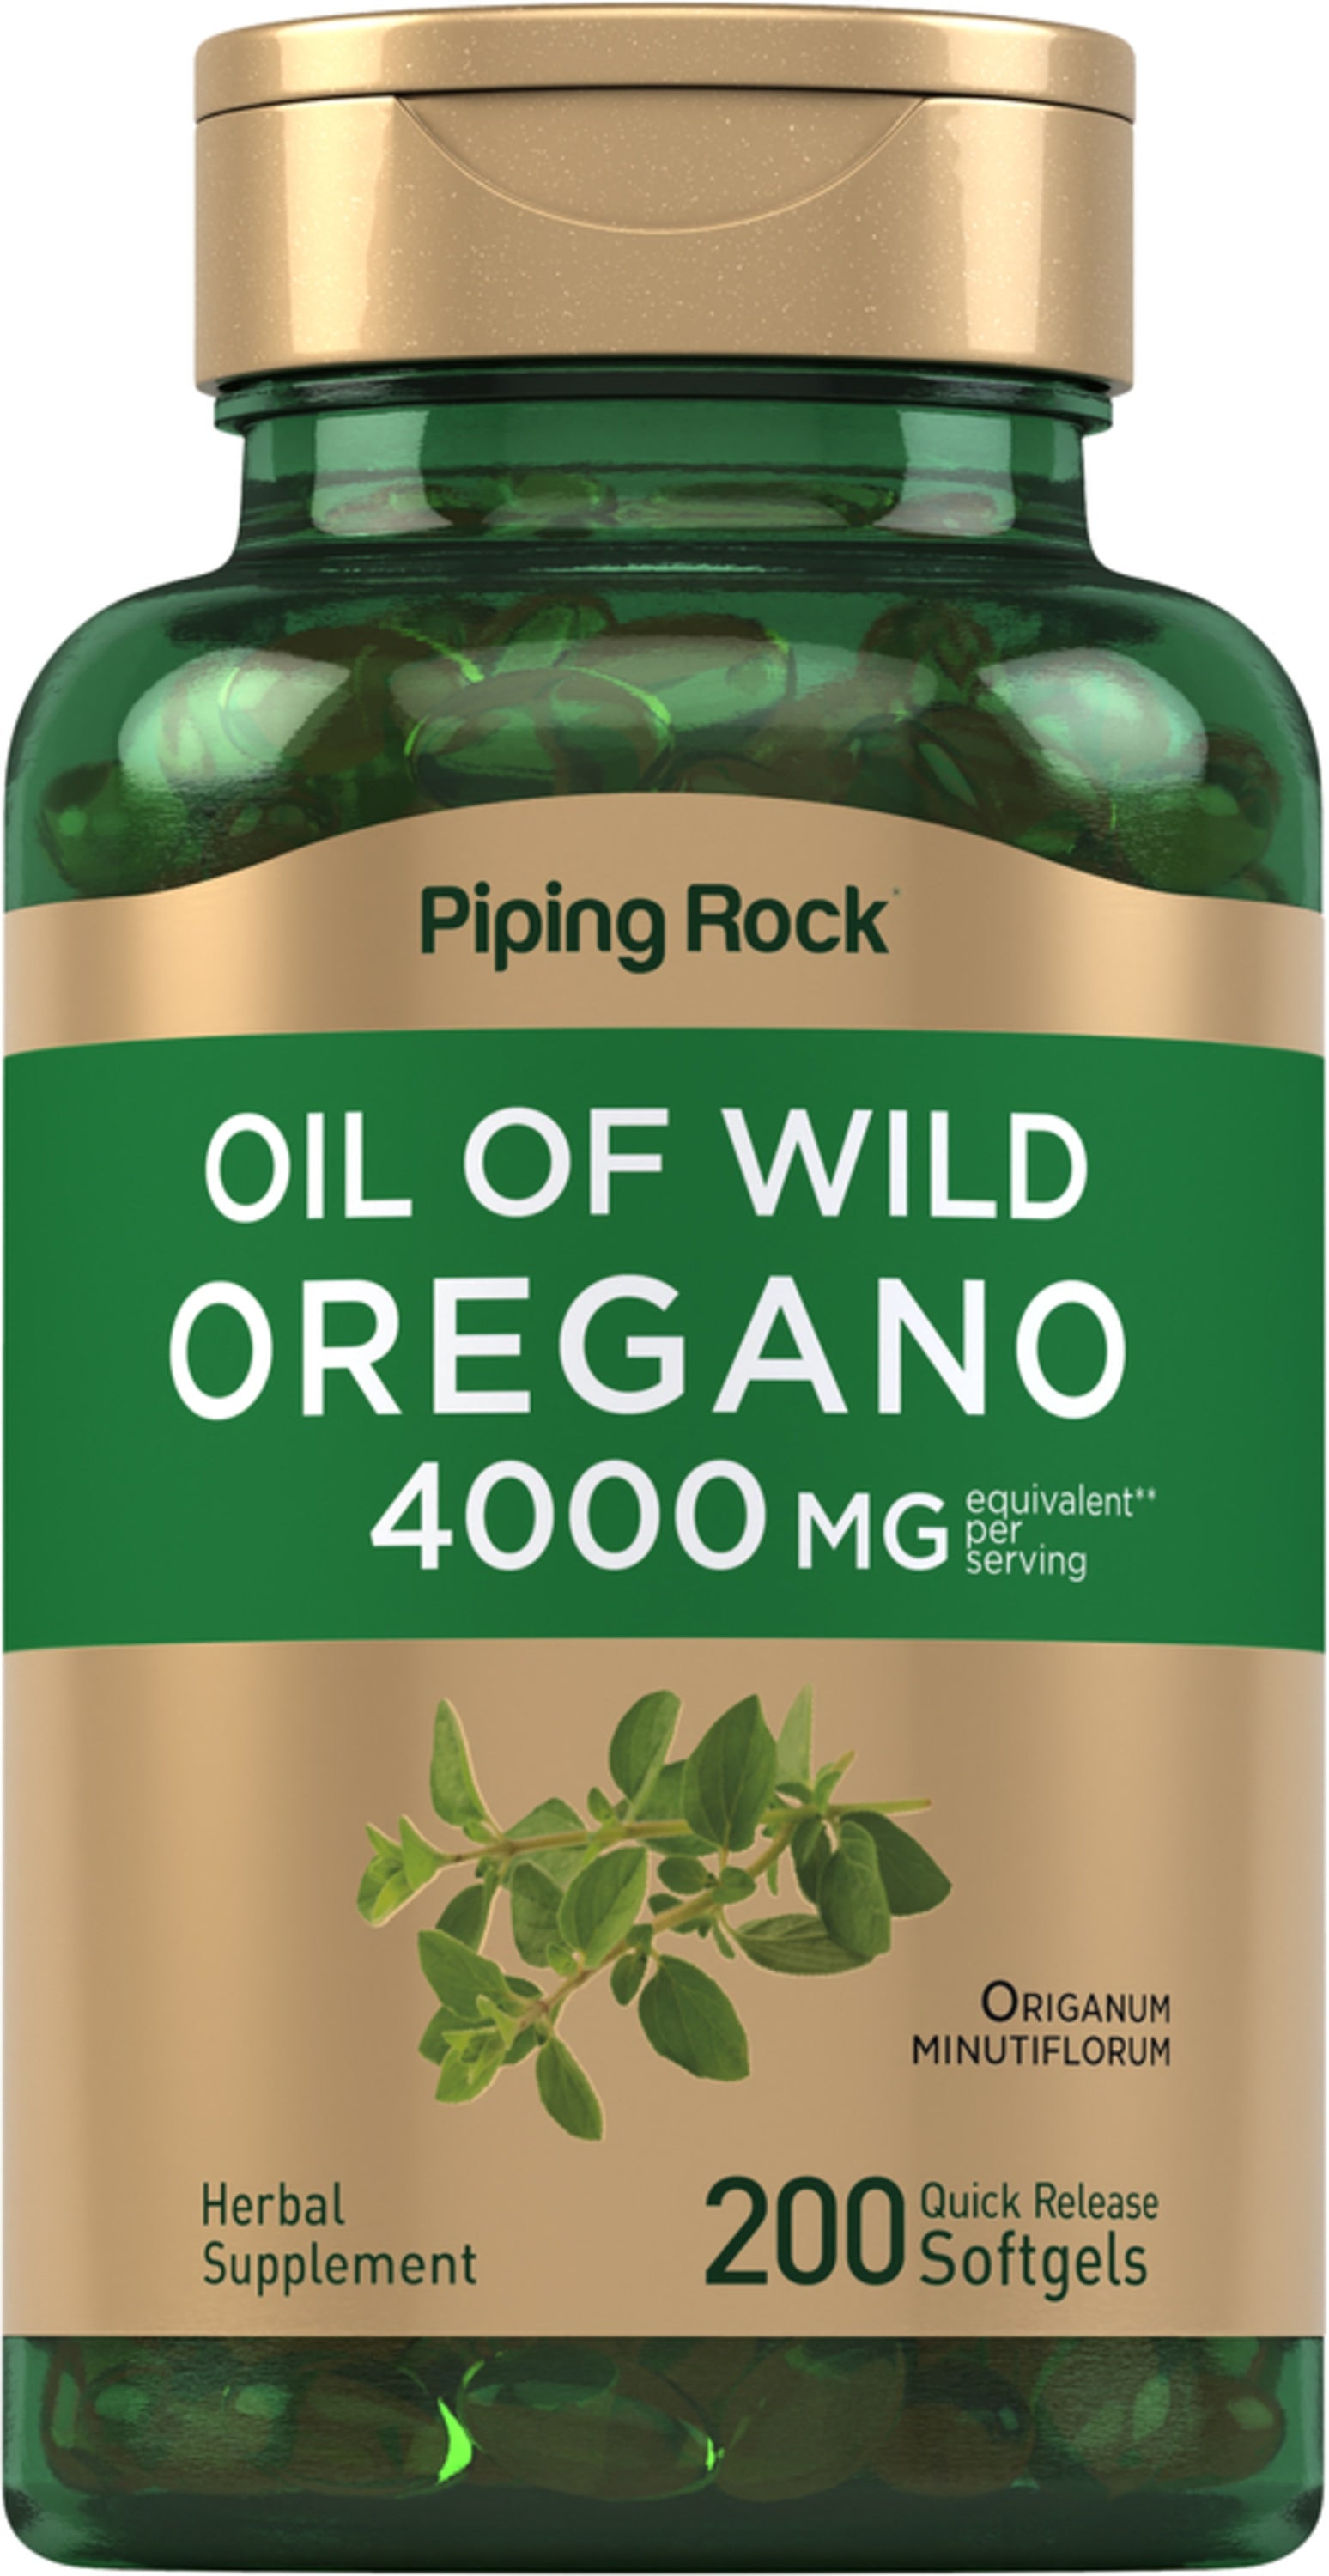 Oil of Oregano, 4000 mg (per serving), 150 Quick Release Softgels